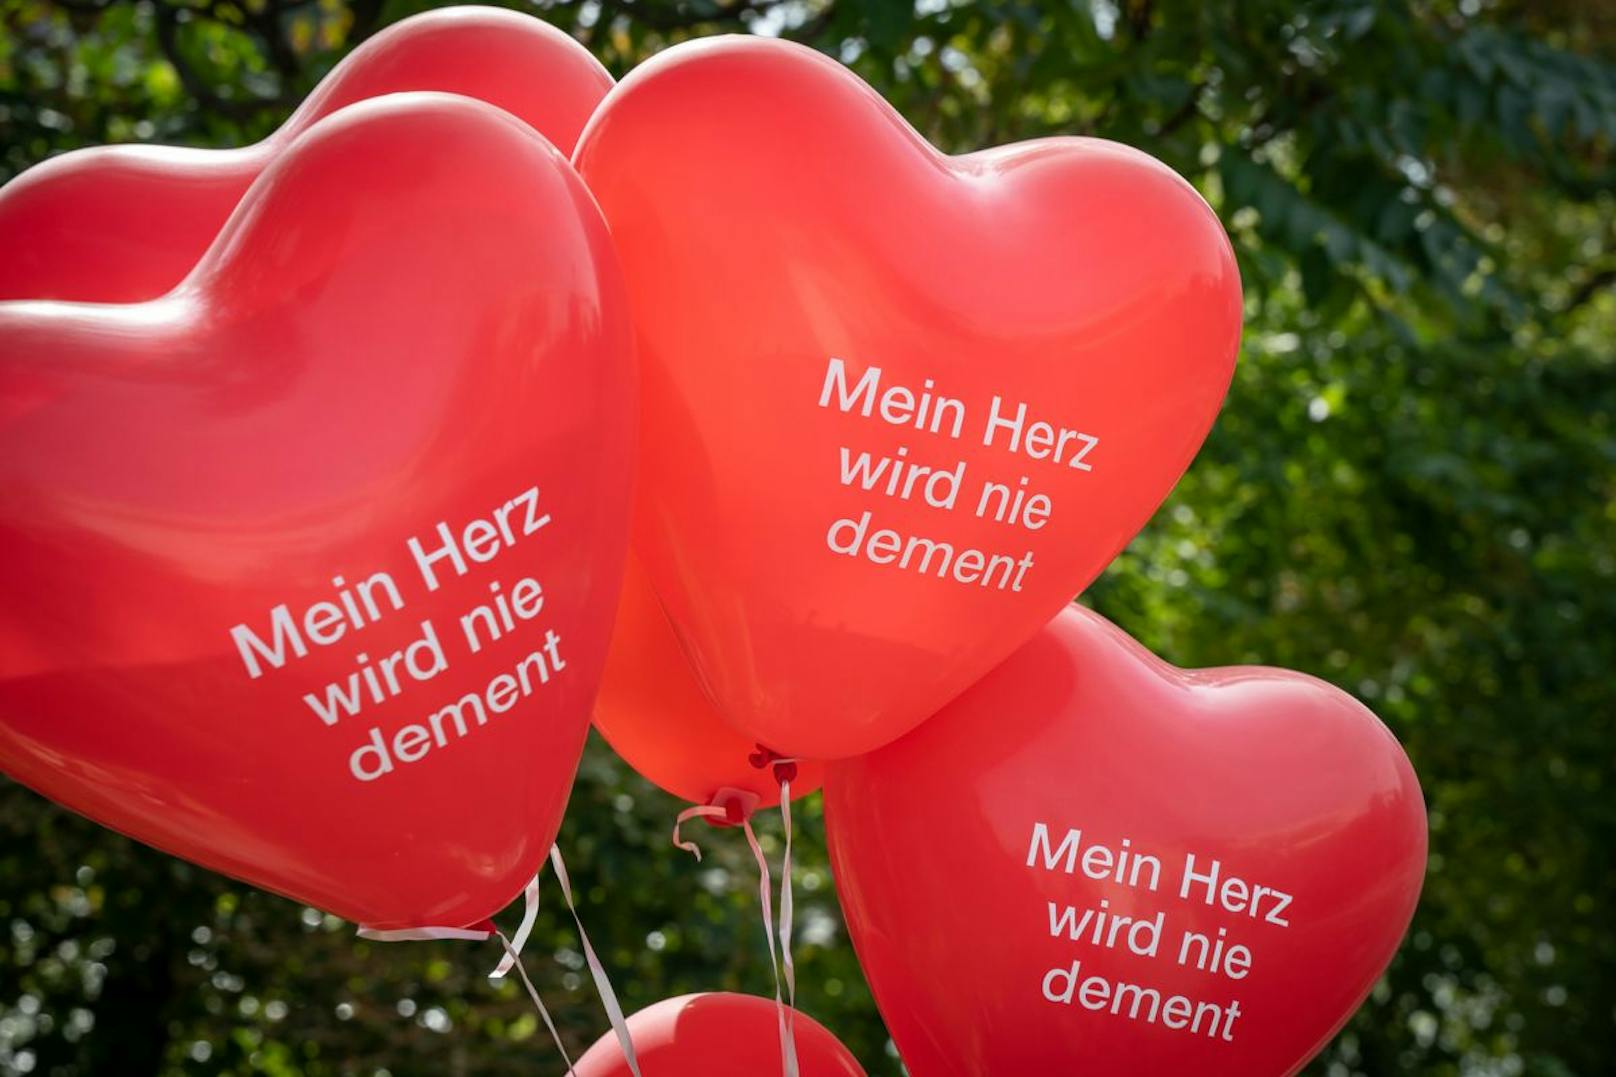 Der Slogan "Mein Herz wird nie dement" prägte heuer die Aktion. Die Ballons wurden an Passanten verteilt.&nbsp;